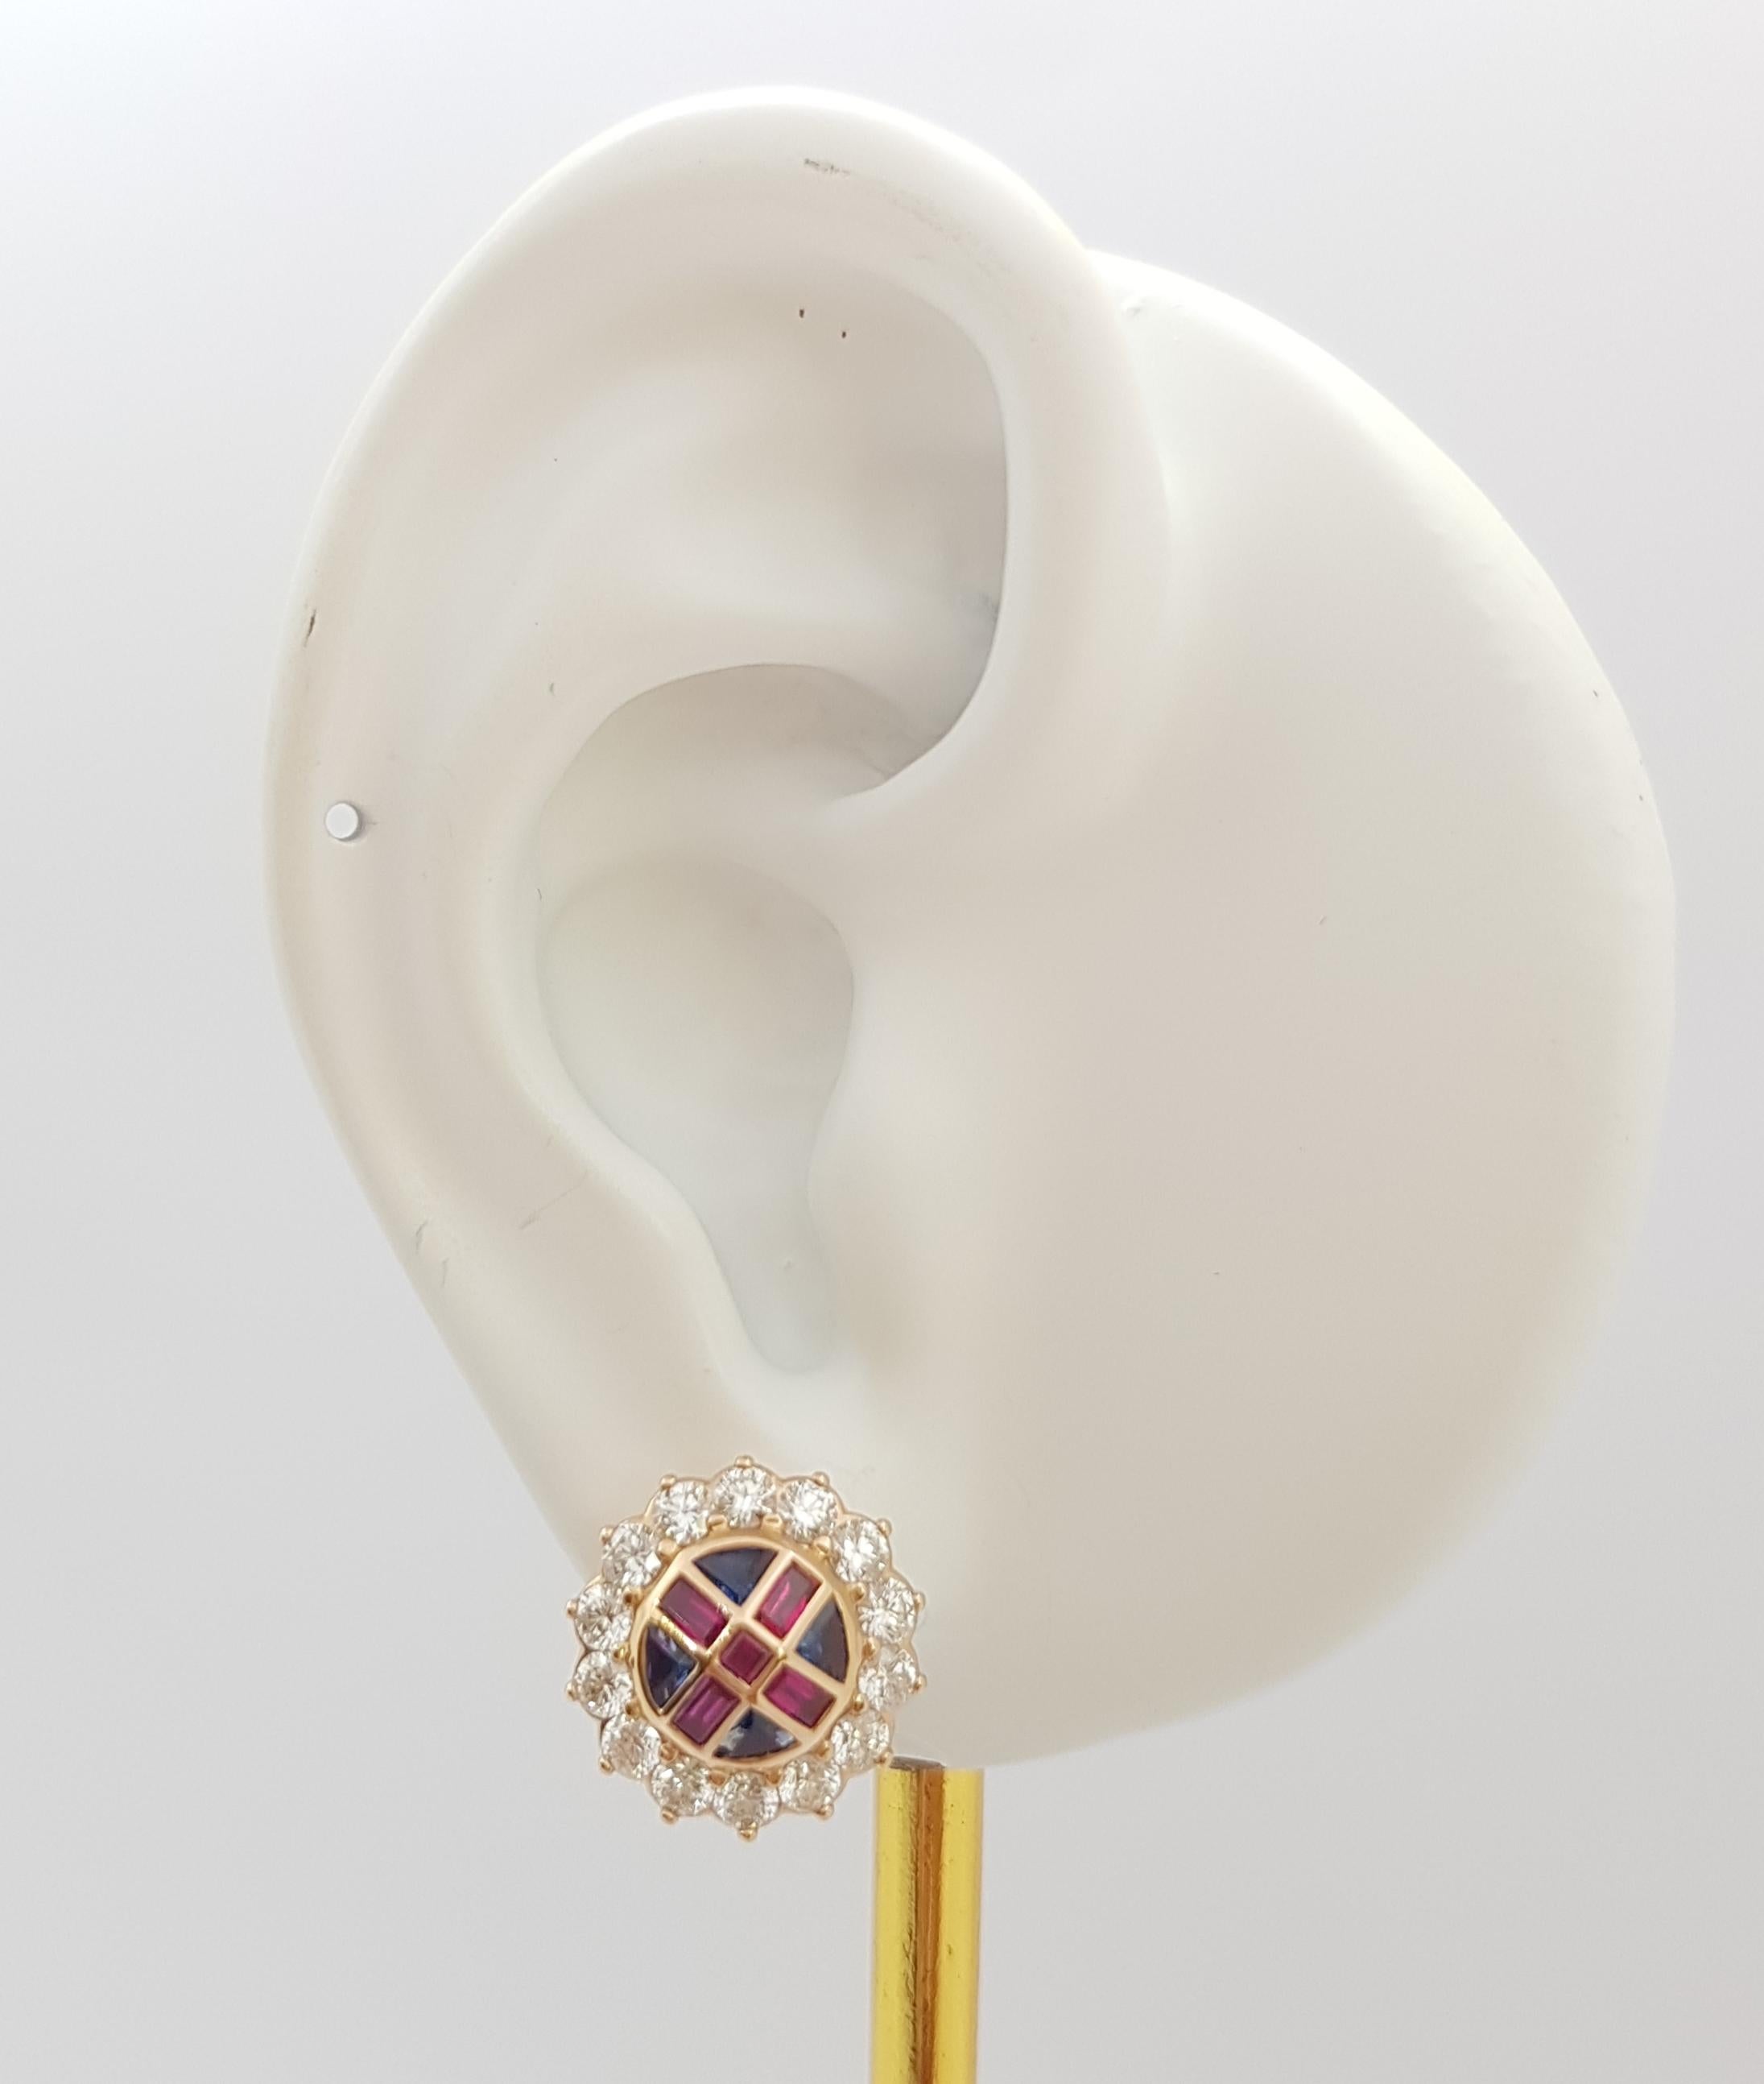 Rubin 0,71 Karat, blauer Saphir 1,50 Karat und Diamant 1,42 Karat Ohrringe in 18K Rose Gold Fassung

Breite: 1.5 cm 
Länge: 1.5 cm
Gesamtgewicht: 8,53 Gramm

